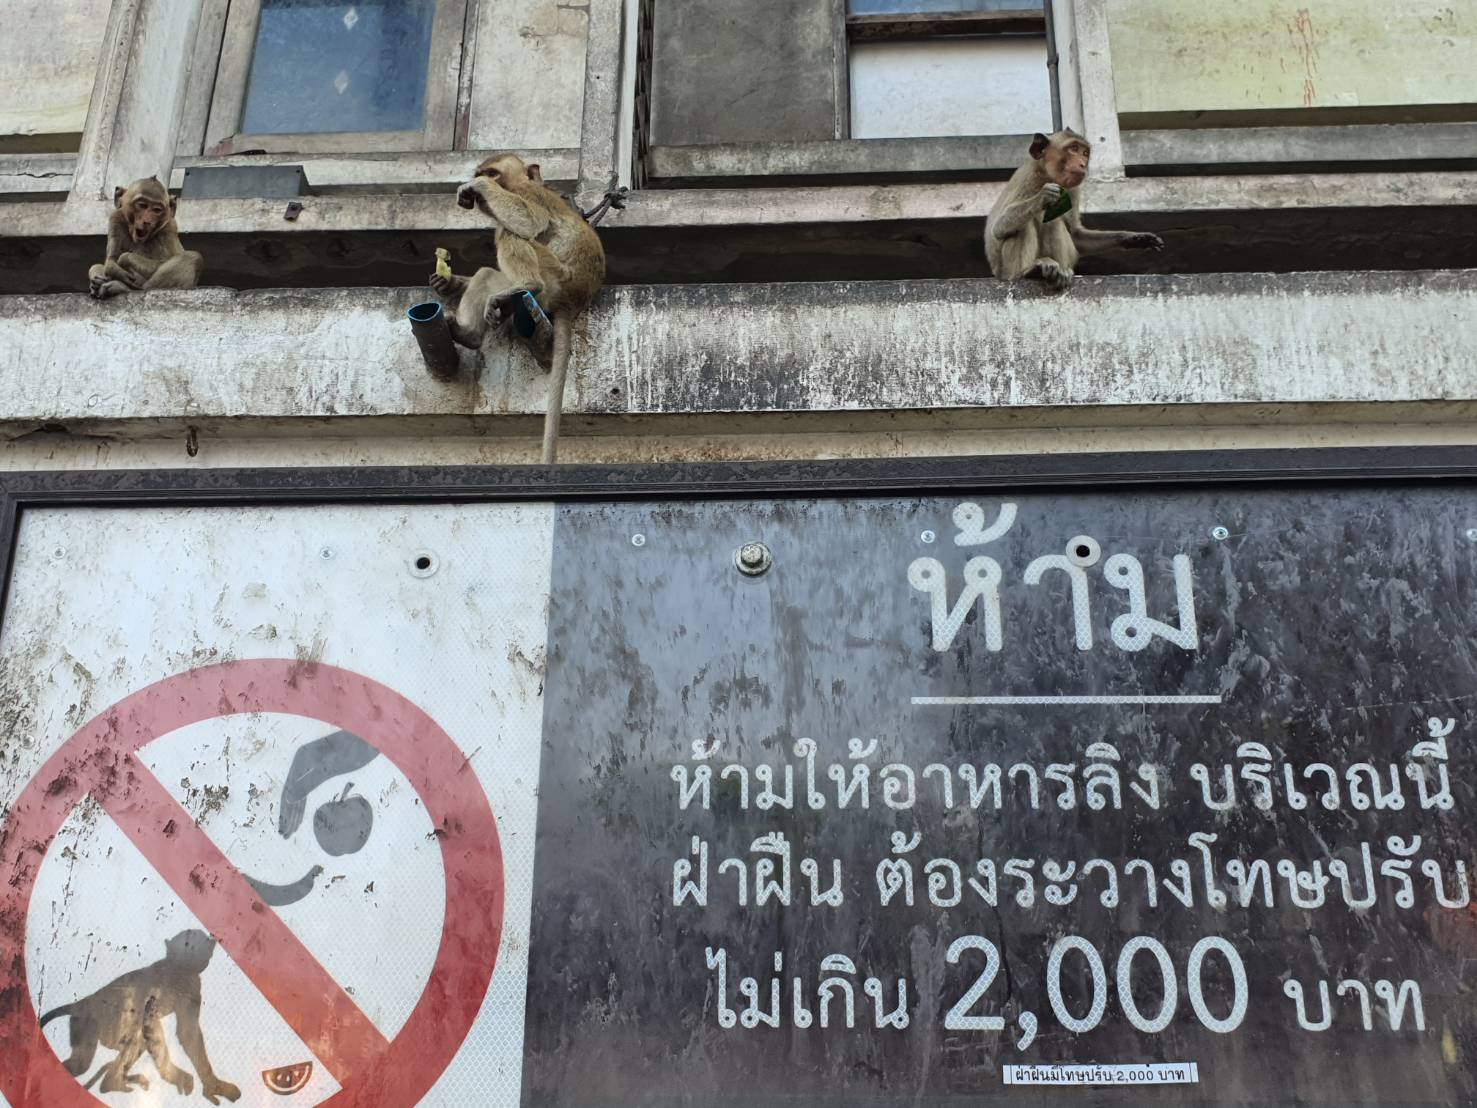 ลพบุรี-ลิงโมโหหิวก้าวร้าวบุกชิงของกินทำร้ายชาวบ้านบาดเจ็บ